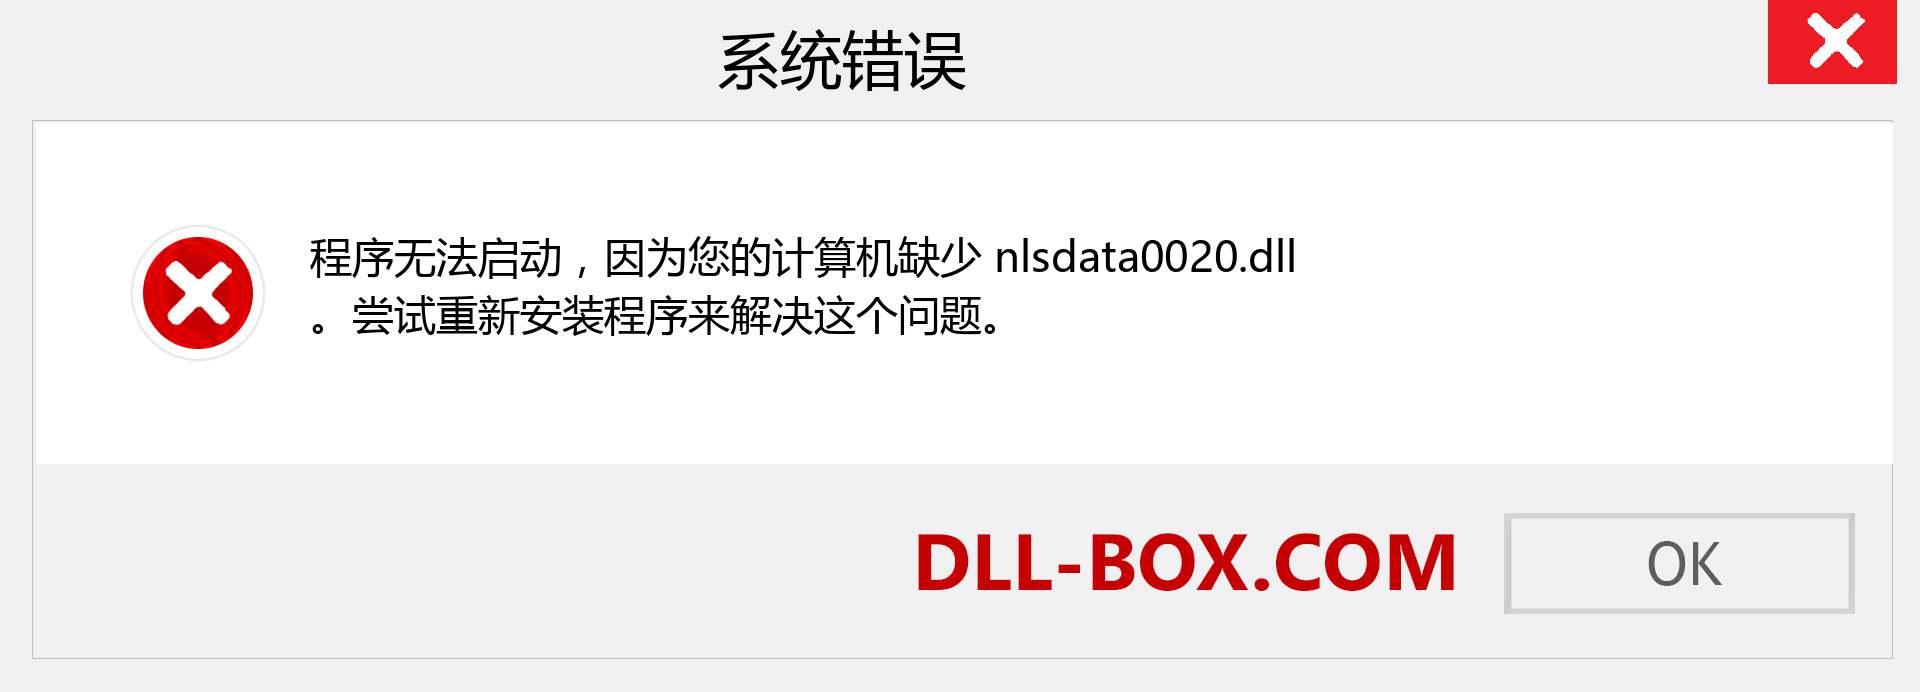 nlsdata0020.dll 文件丢失？。 适用于 Windows 7、8、10 的下载 - 修复 Windows、照片、图像上的 nlsdata0020 dll 丢失错误